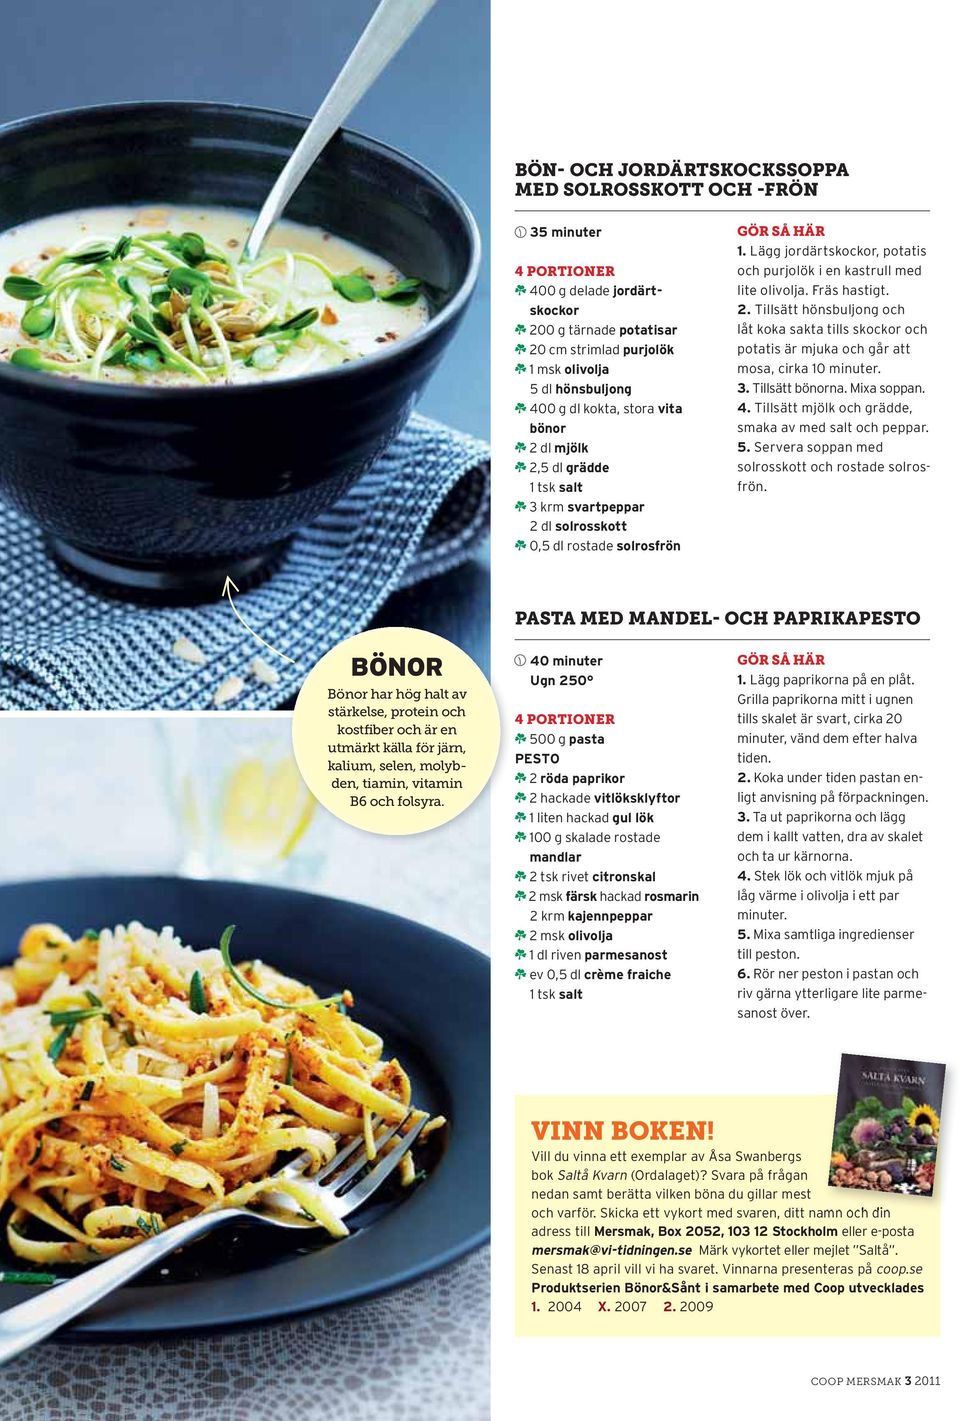 Lägg jordärtskockor, potatis och purjolök i en kastrull med lite olivolja. Fräs hastigt. 2.